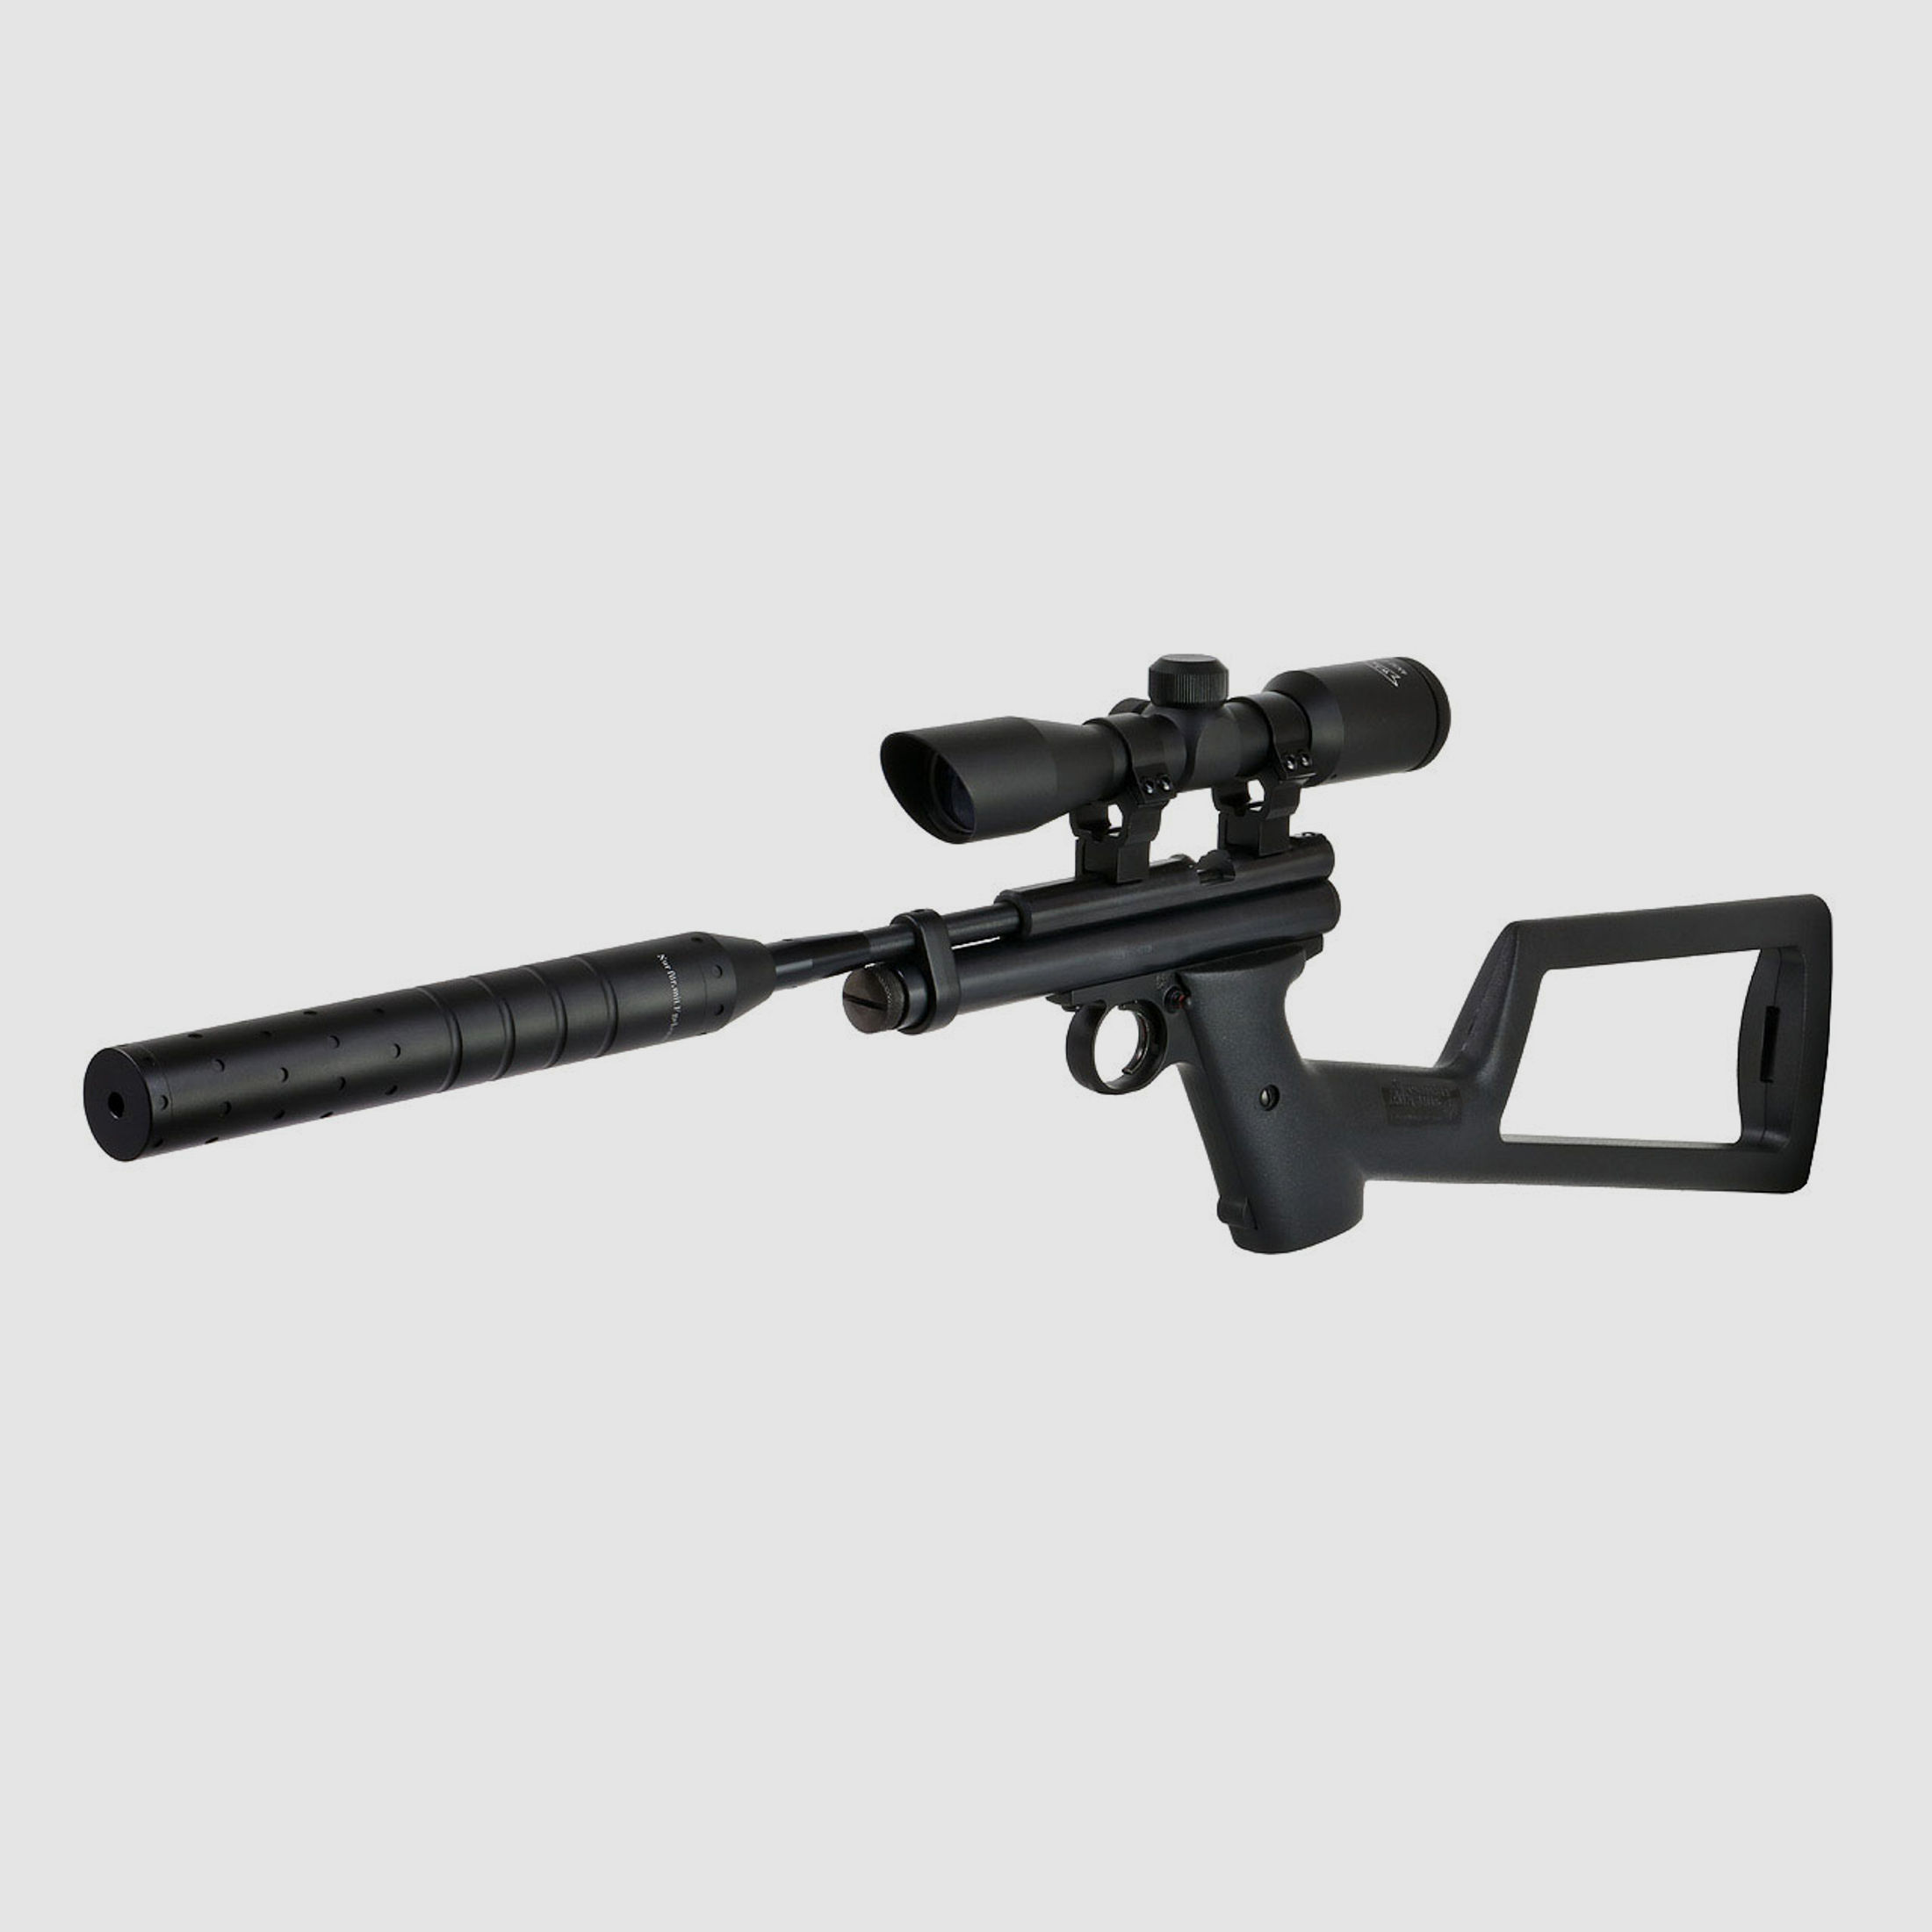 CO2 Pistole Crosman 2240 Sniper Kaliber 5,5 mm (P18)+ Hinterschaft SchalldĂ¤mpfer Adapter Zielfernrohr 4x32 Prismenschiene Koffer